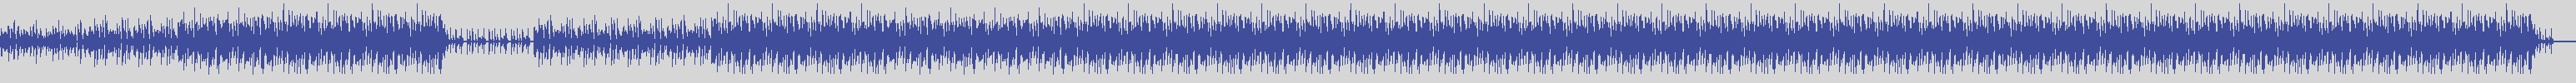 noclouds_chillout [NOC017] Blue Beach - Notturnamente [Original Mix] audio wave form